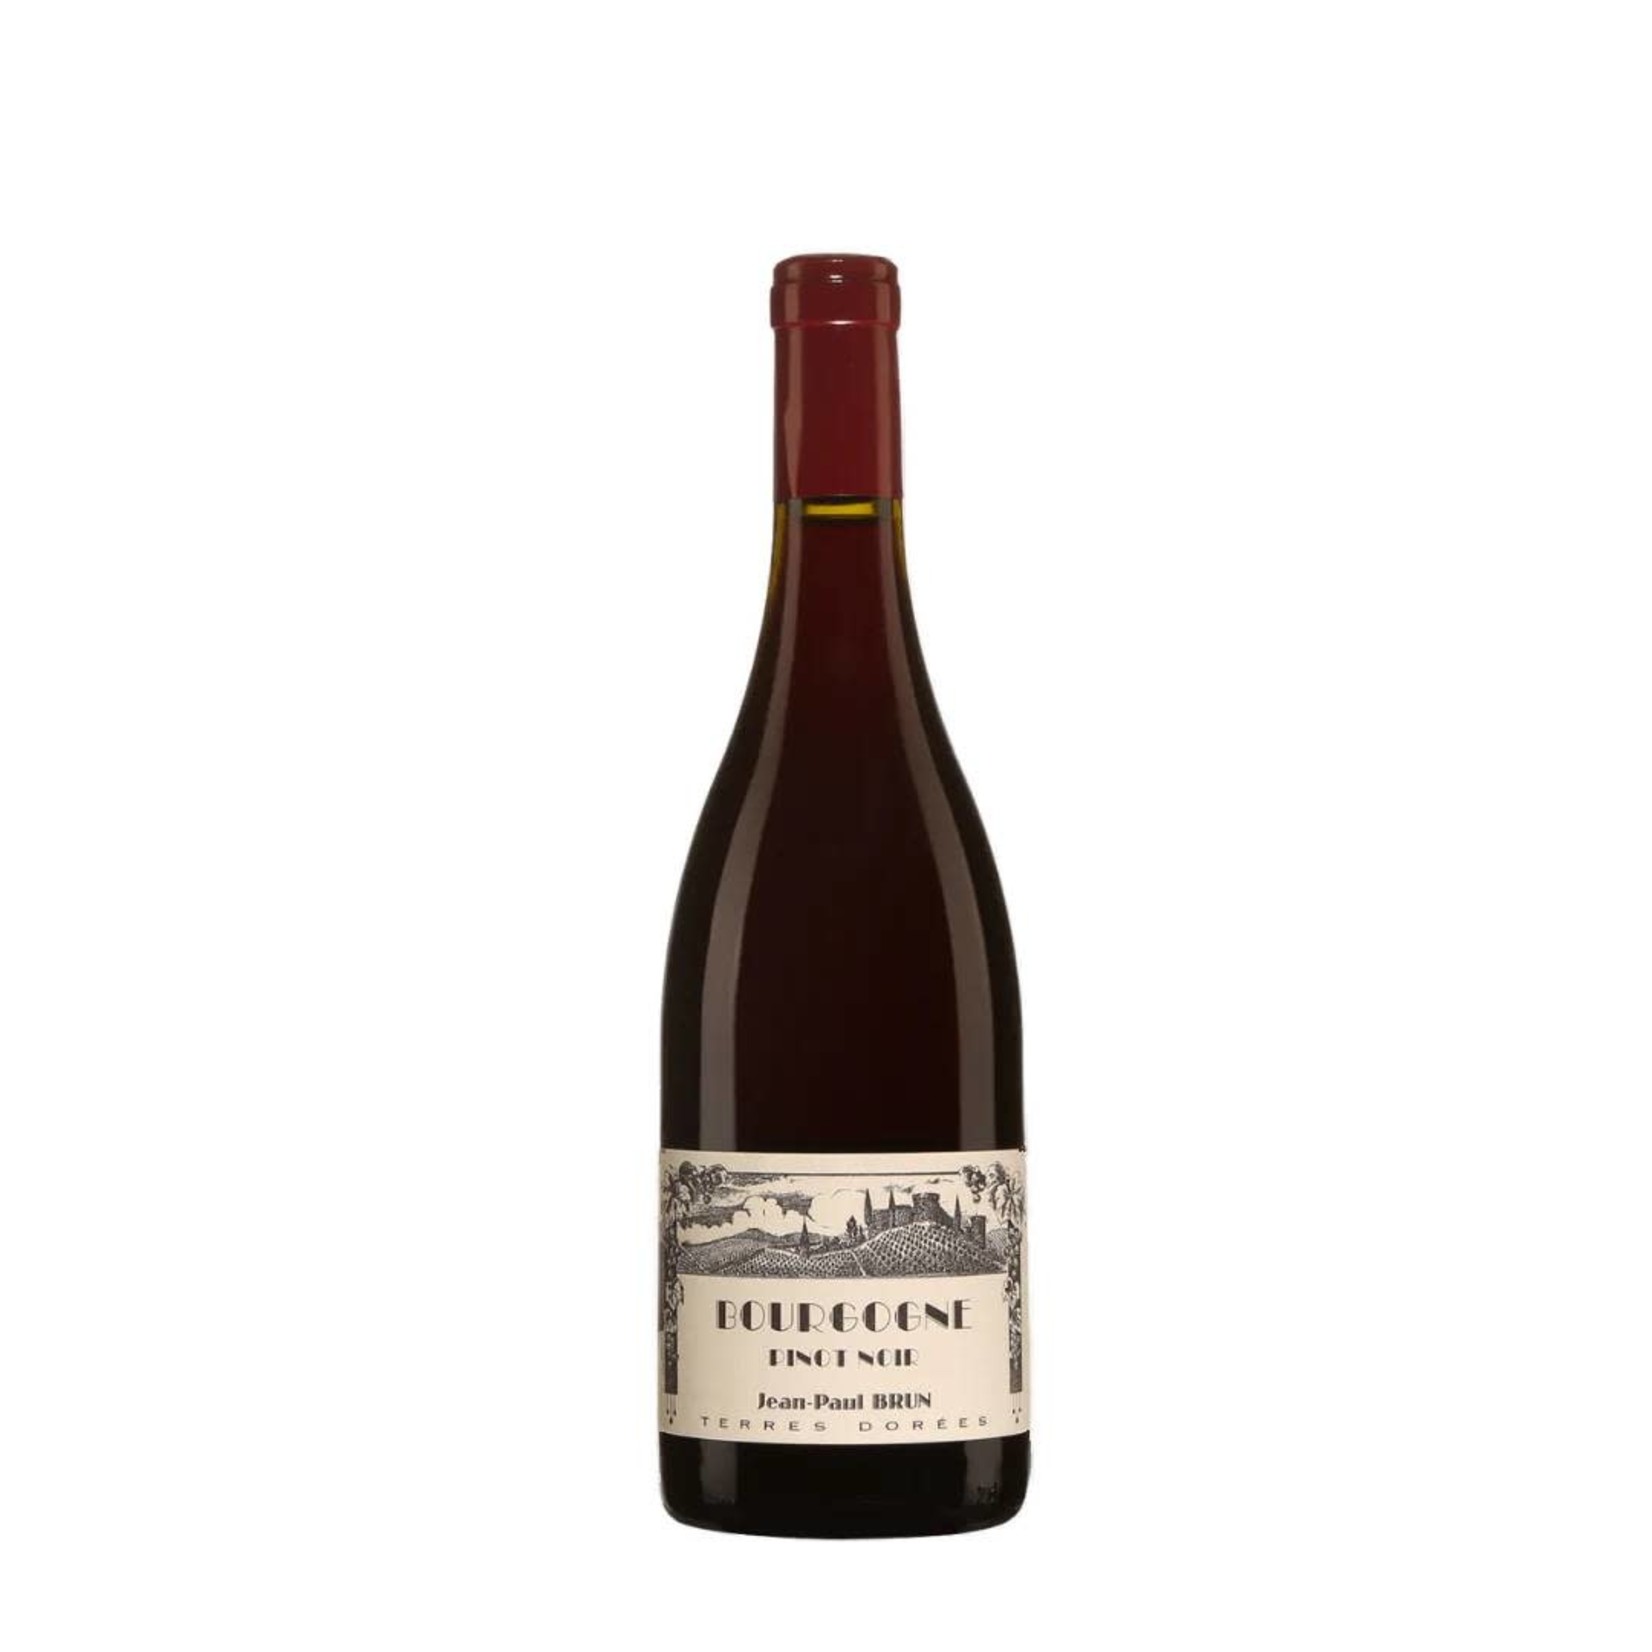 2020 Jean-Paul Brun 'Terres Dorées' Bourgogne Pinot Noir